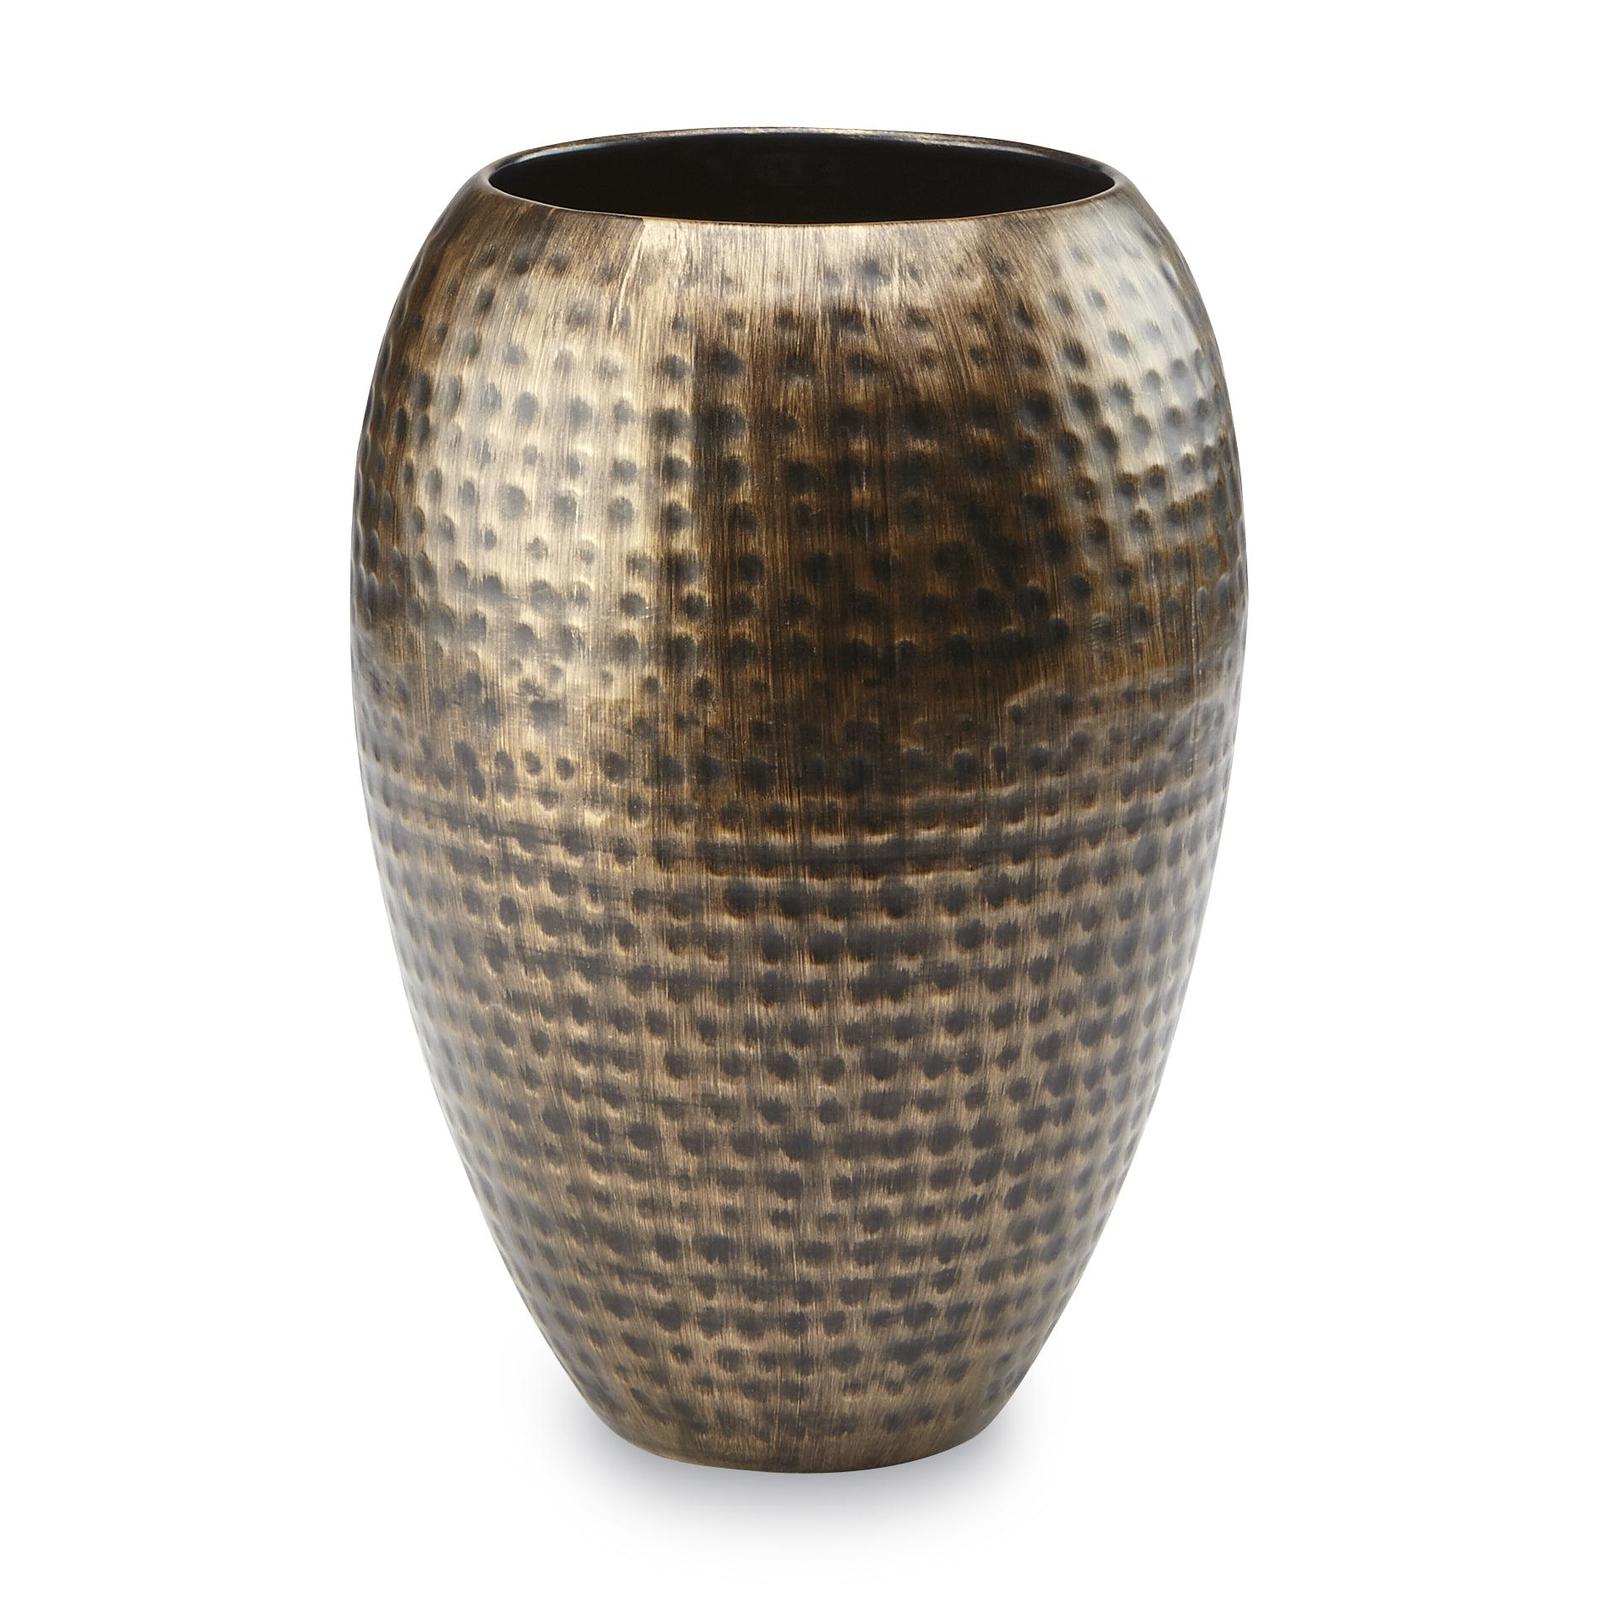 Bronze-Tone Textured Metal Vase